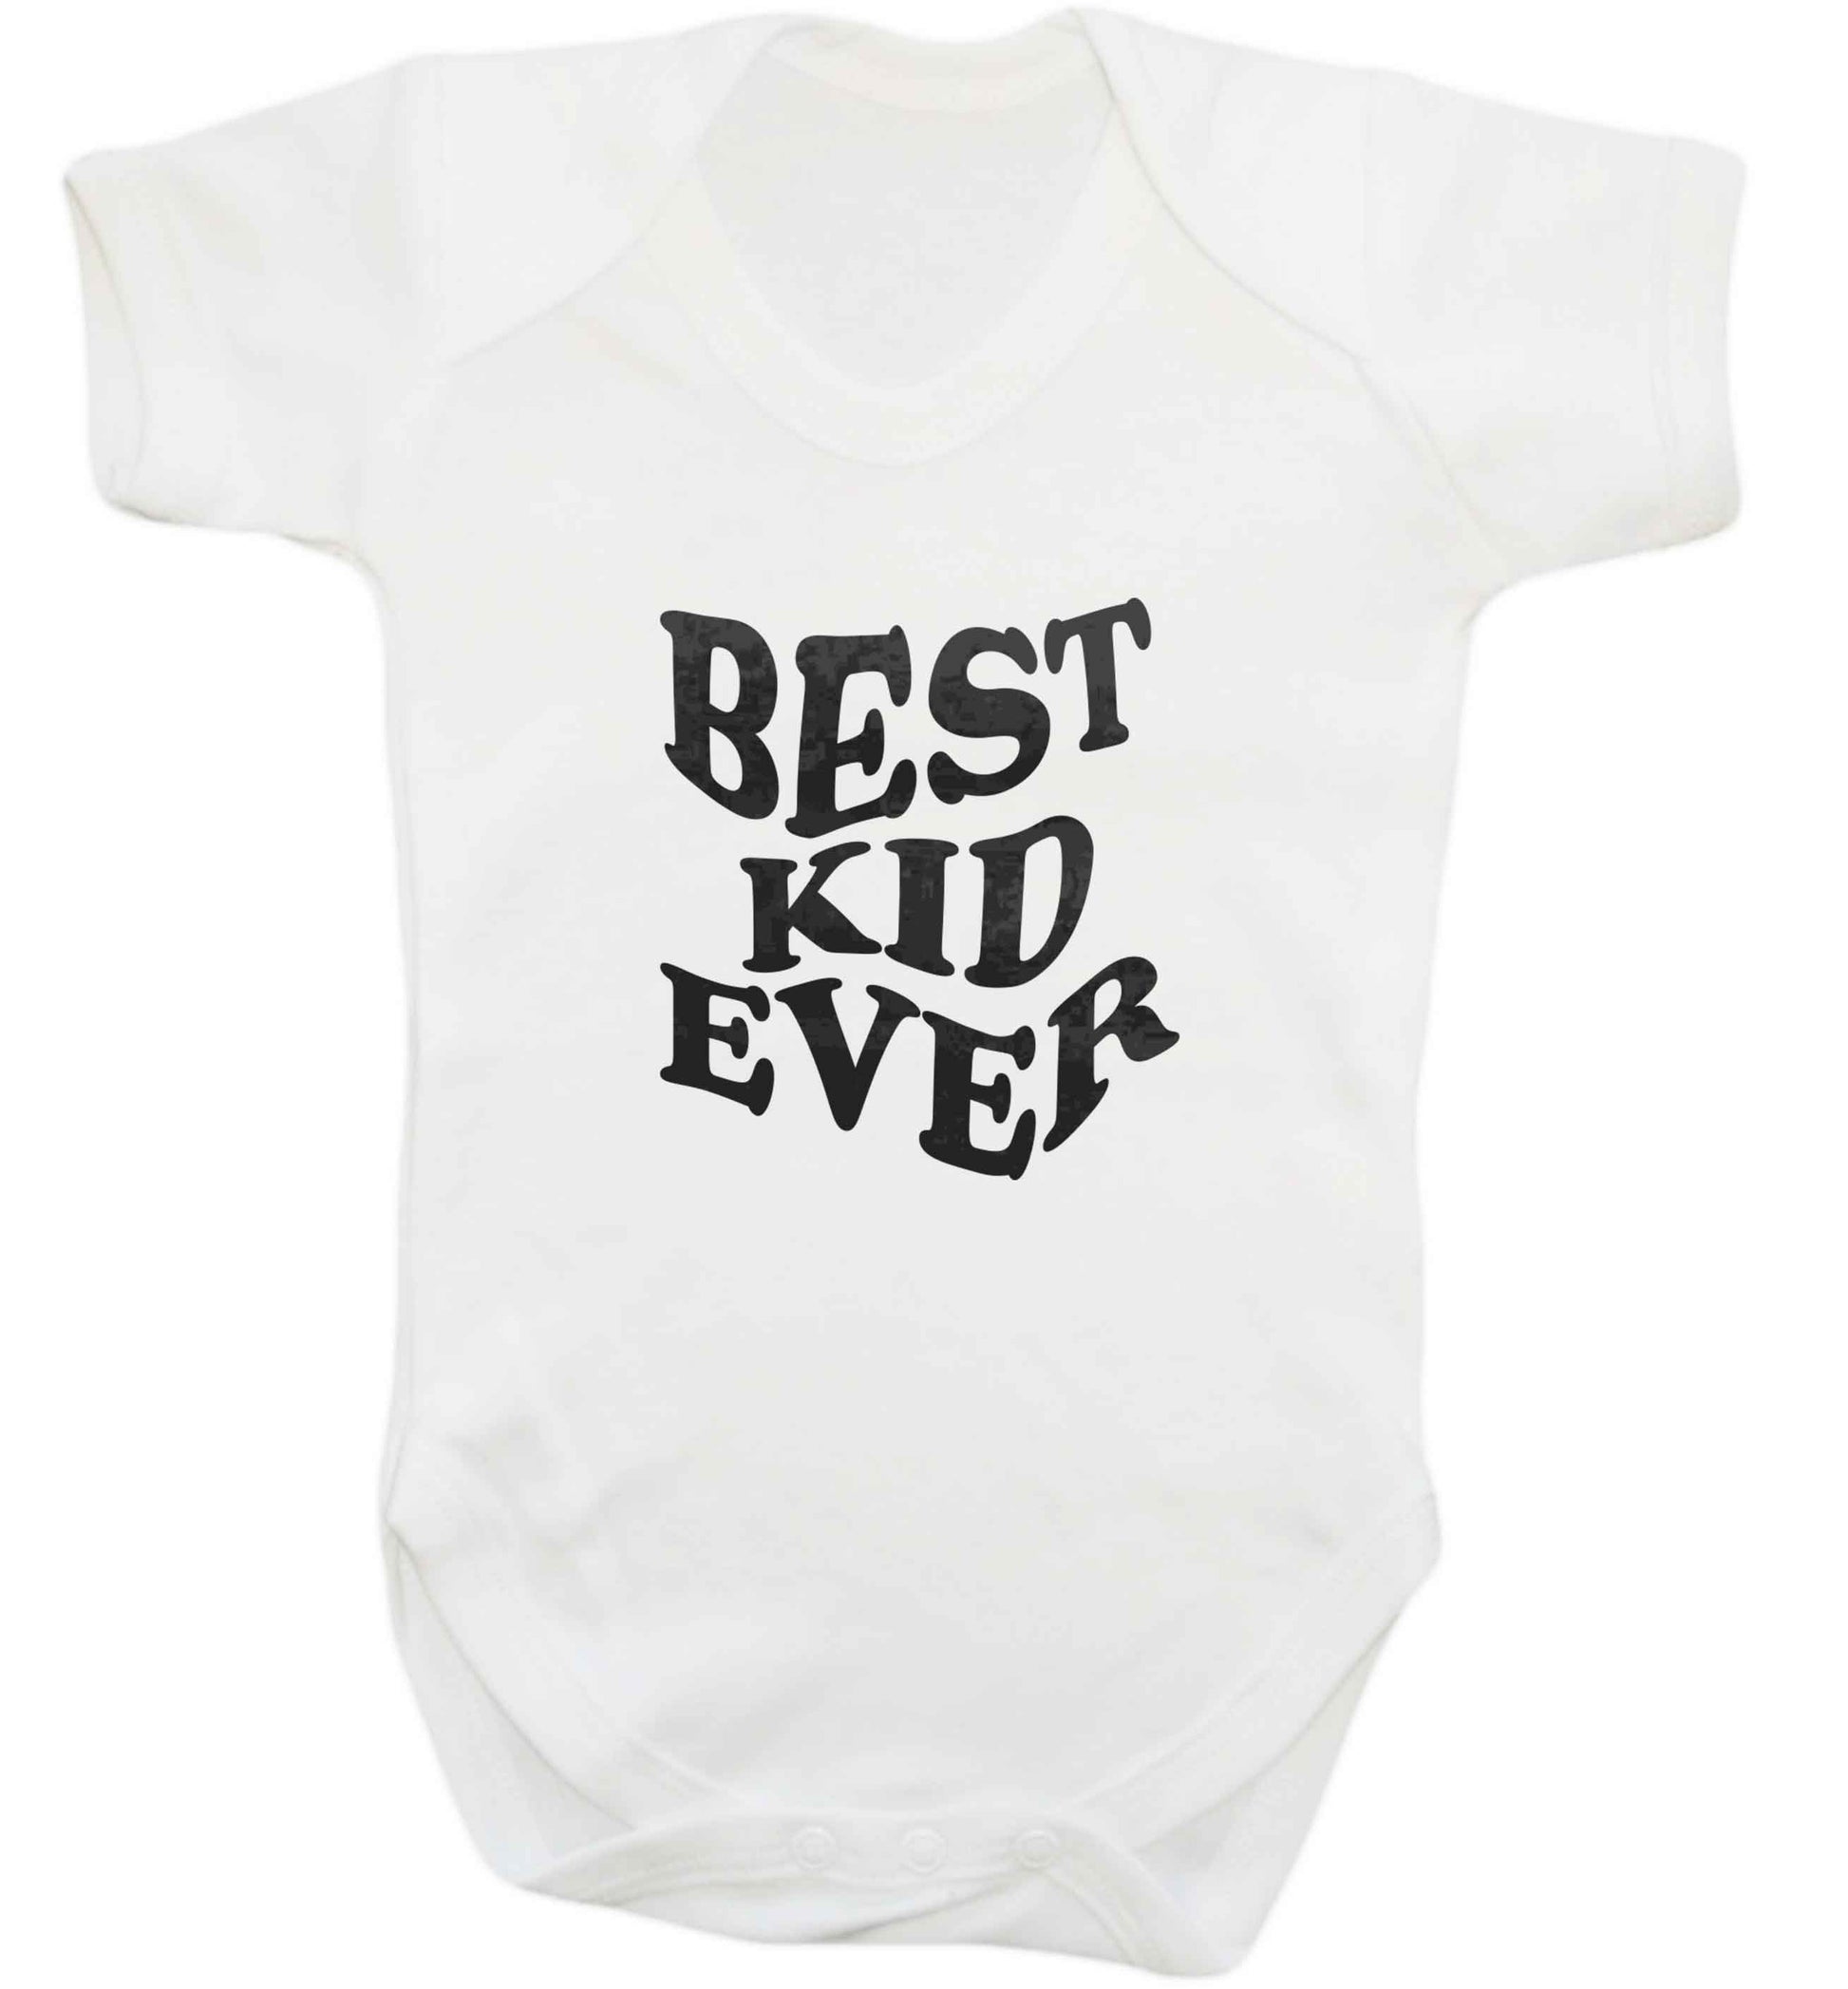 Best kid ever baby vest white 18-24 months